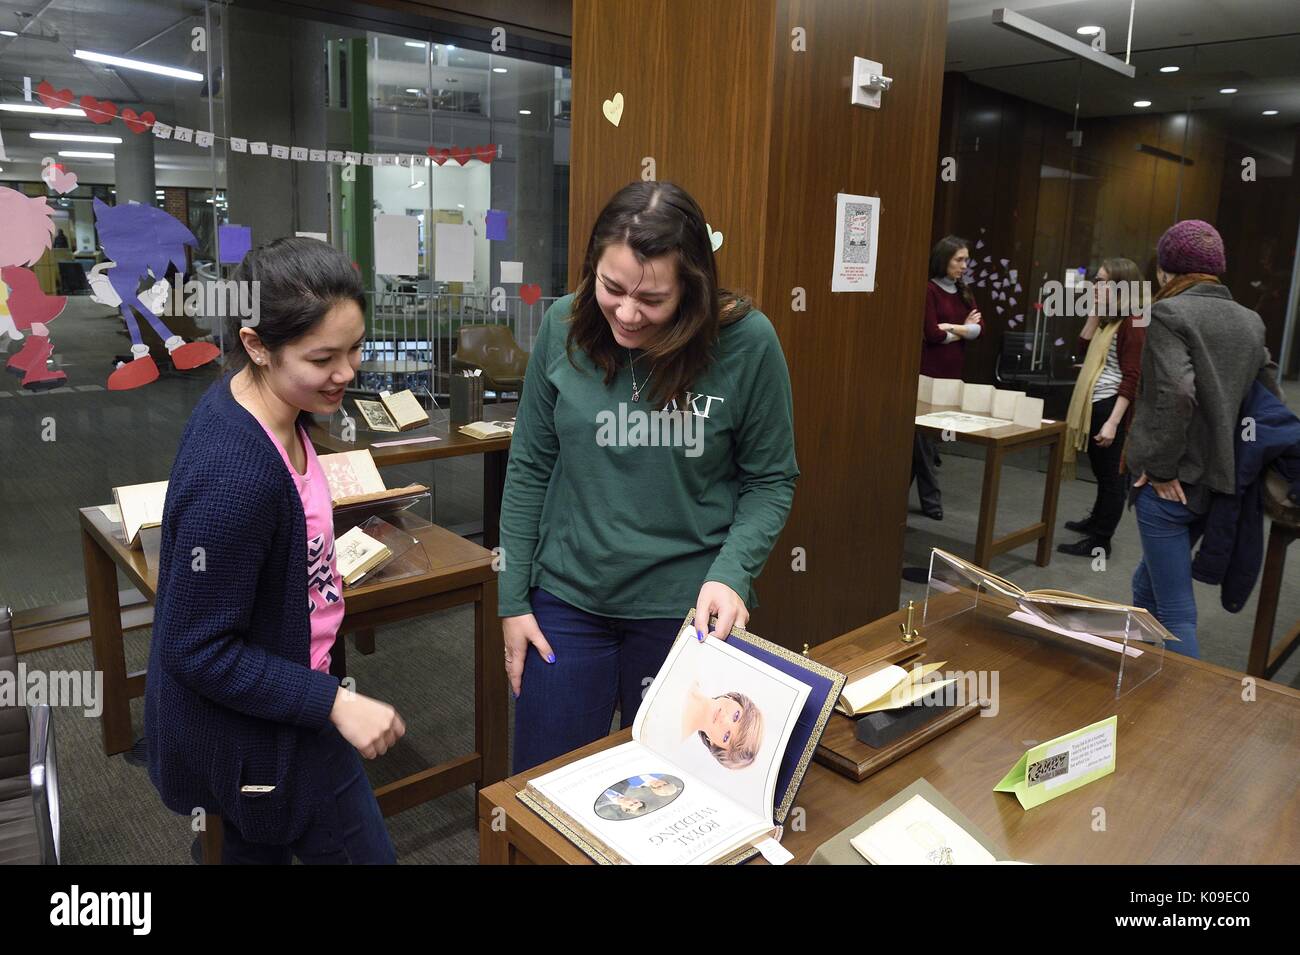 Deux étudiants du collège féminin de rire à une page dans un livre à la Sale Books et désir ressemble à la bibliothèque de l'événement, le 11 février 2016. Banque D'Images